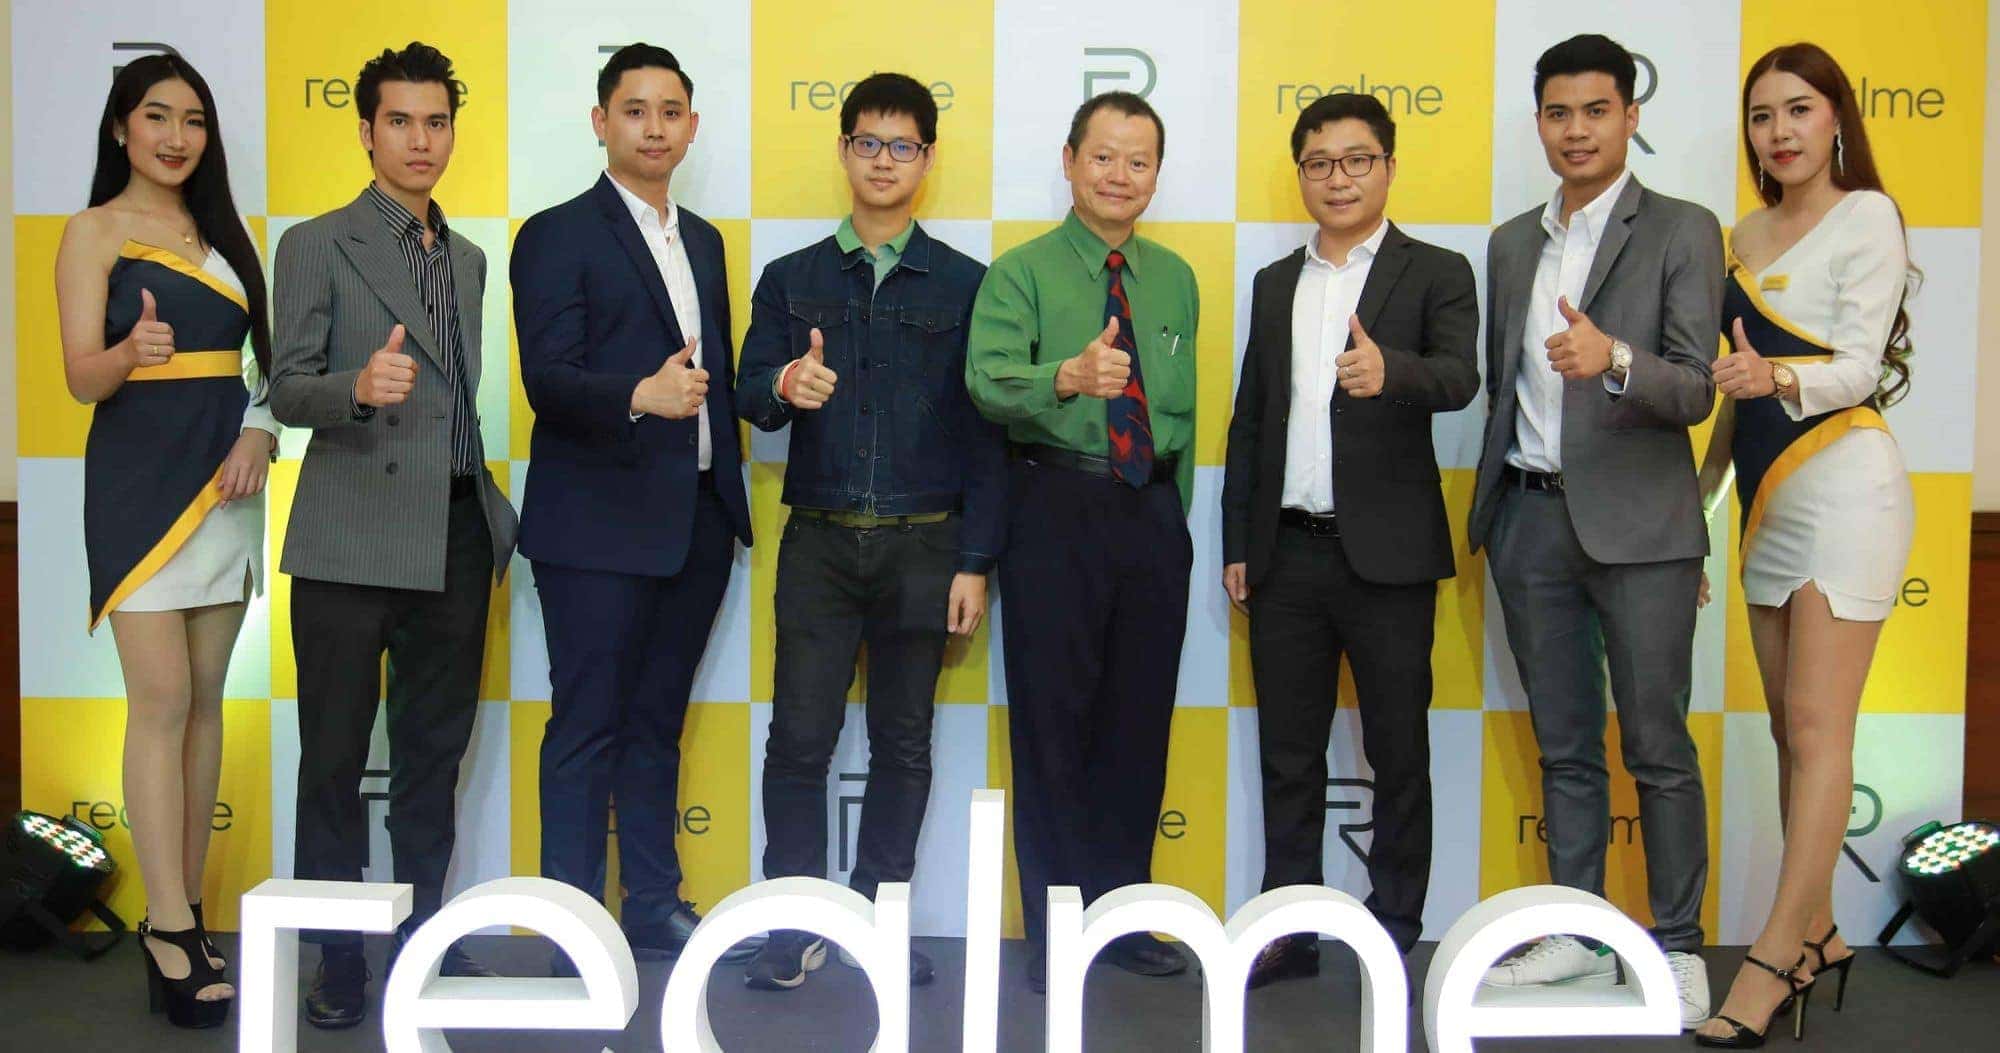 Realme บุกออฟไลน์ จัดงานรวม Dealer ทั่วประเทศไทย 1